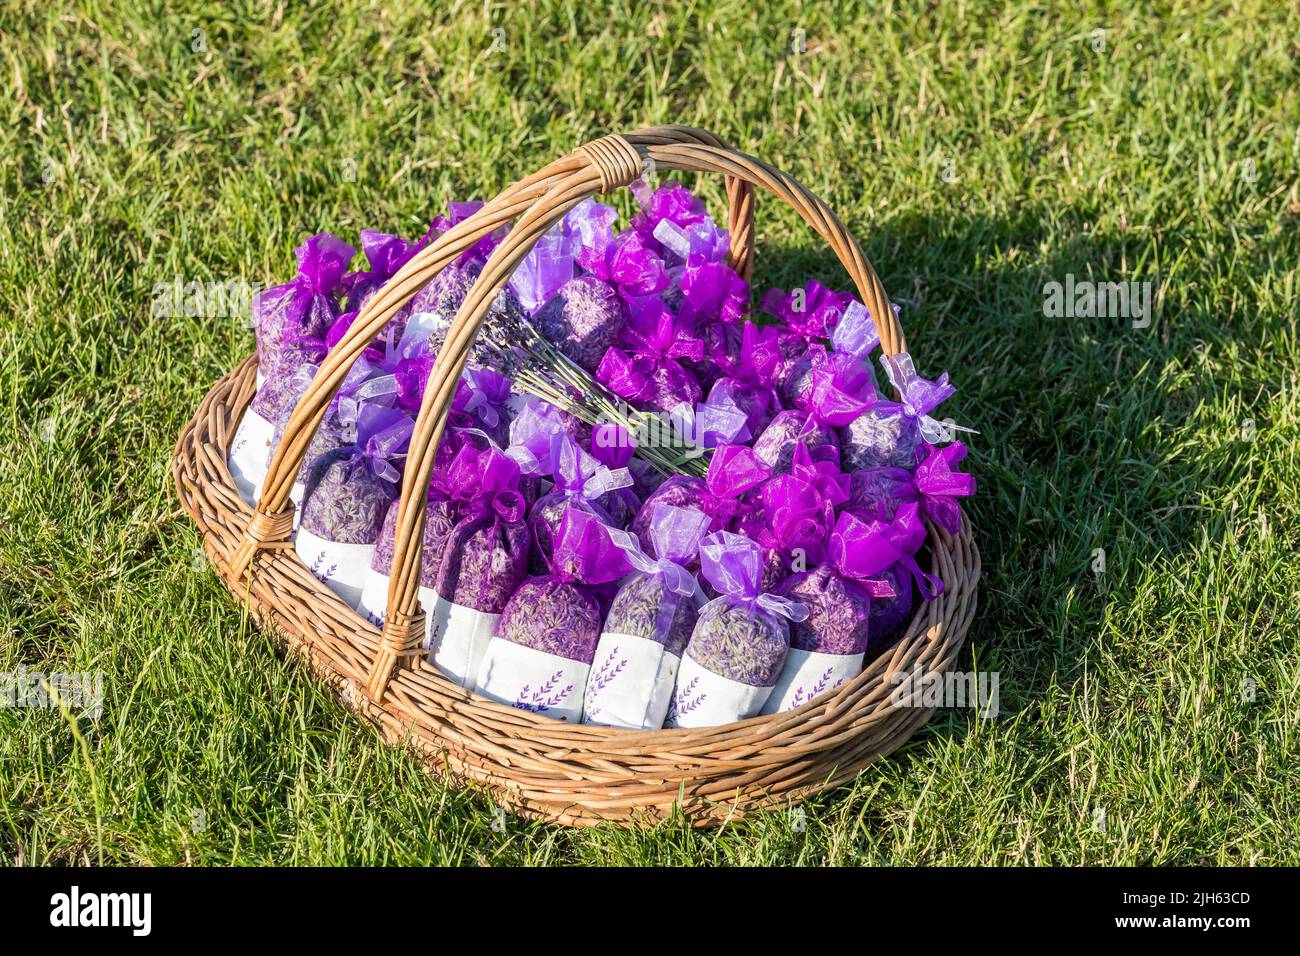 Lavendelknospen trockene Blumen Beutel Duftbeutel, lila Organza Beutel mit natürlichen getrockneten Lavendelblüten in einem Korb auf einer Wiese. Aromatherapie. Stockfoto